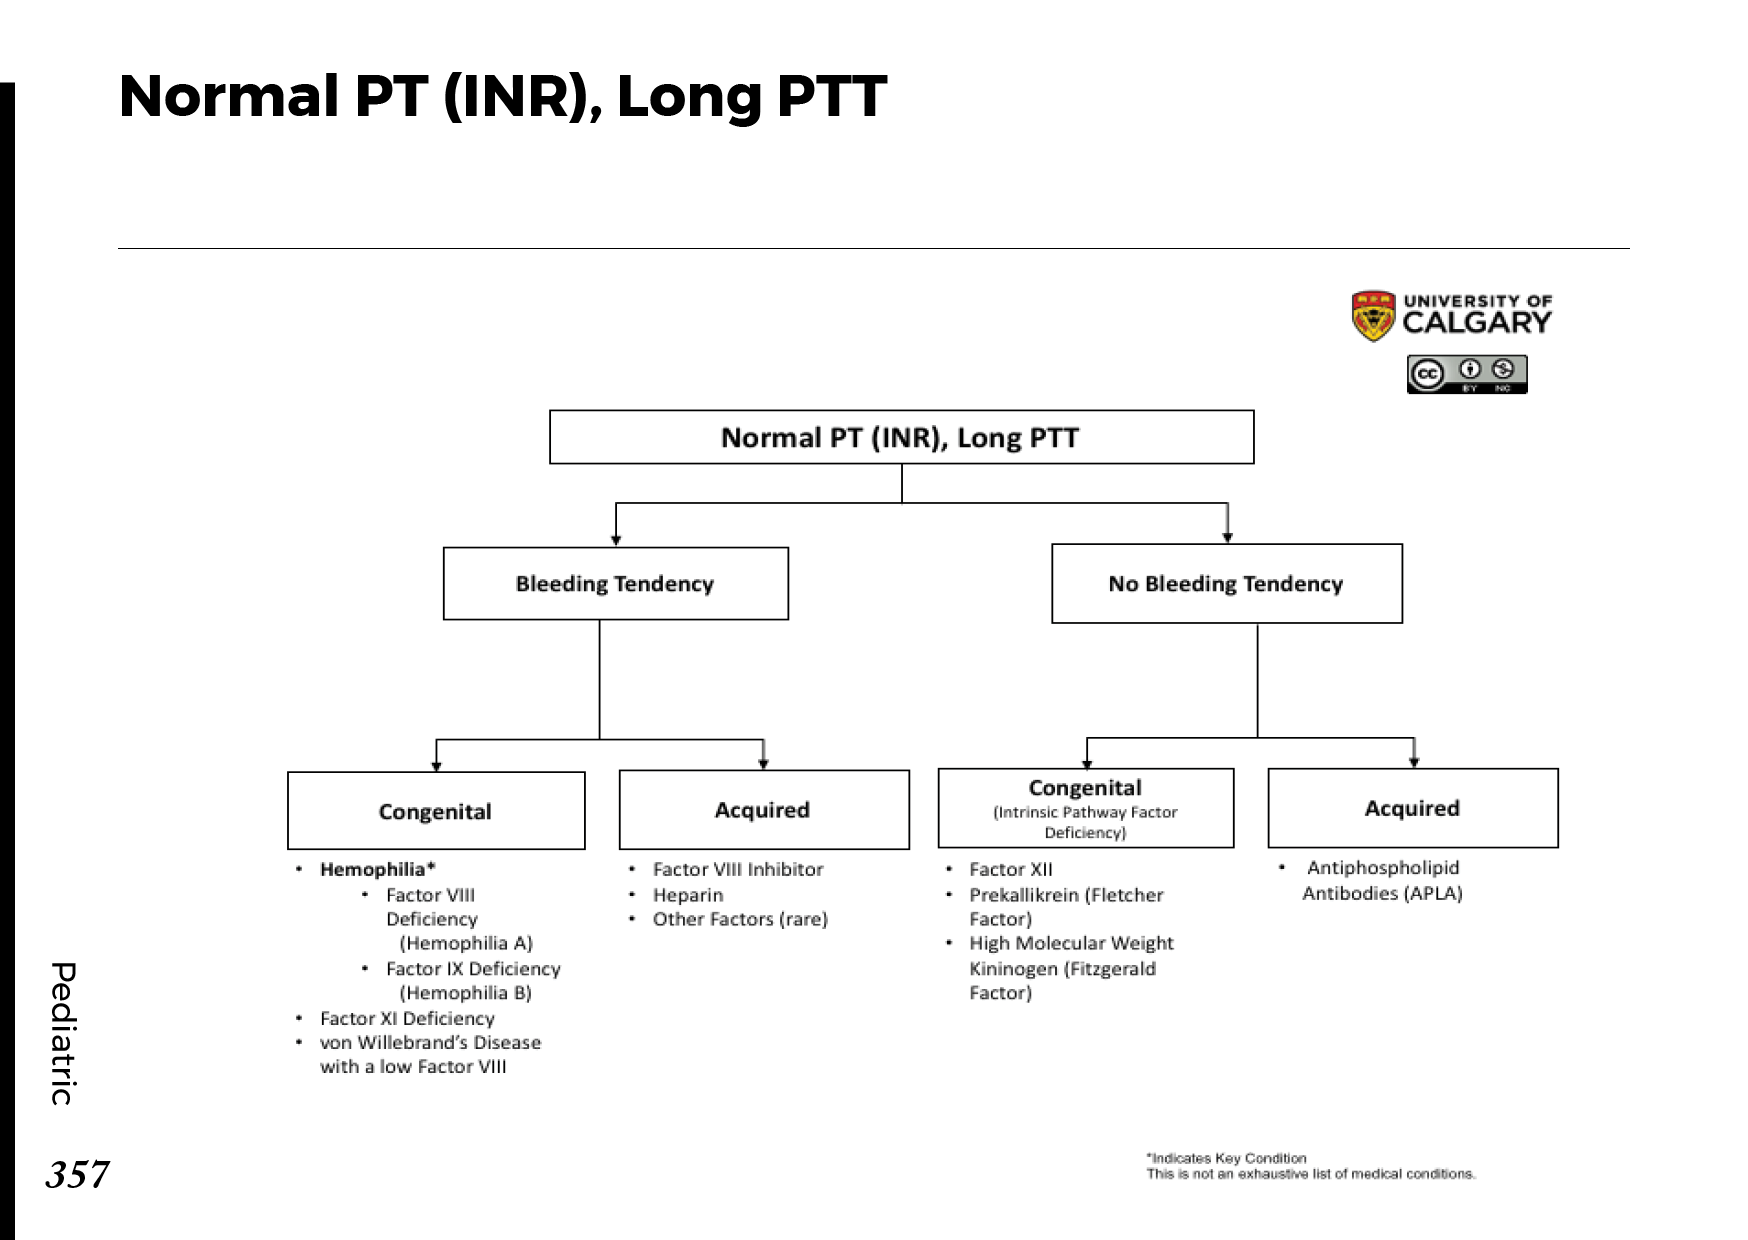 NORMAL PT (INR), LONG PTT Scheme